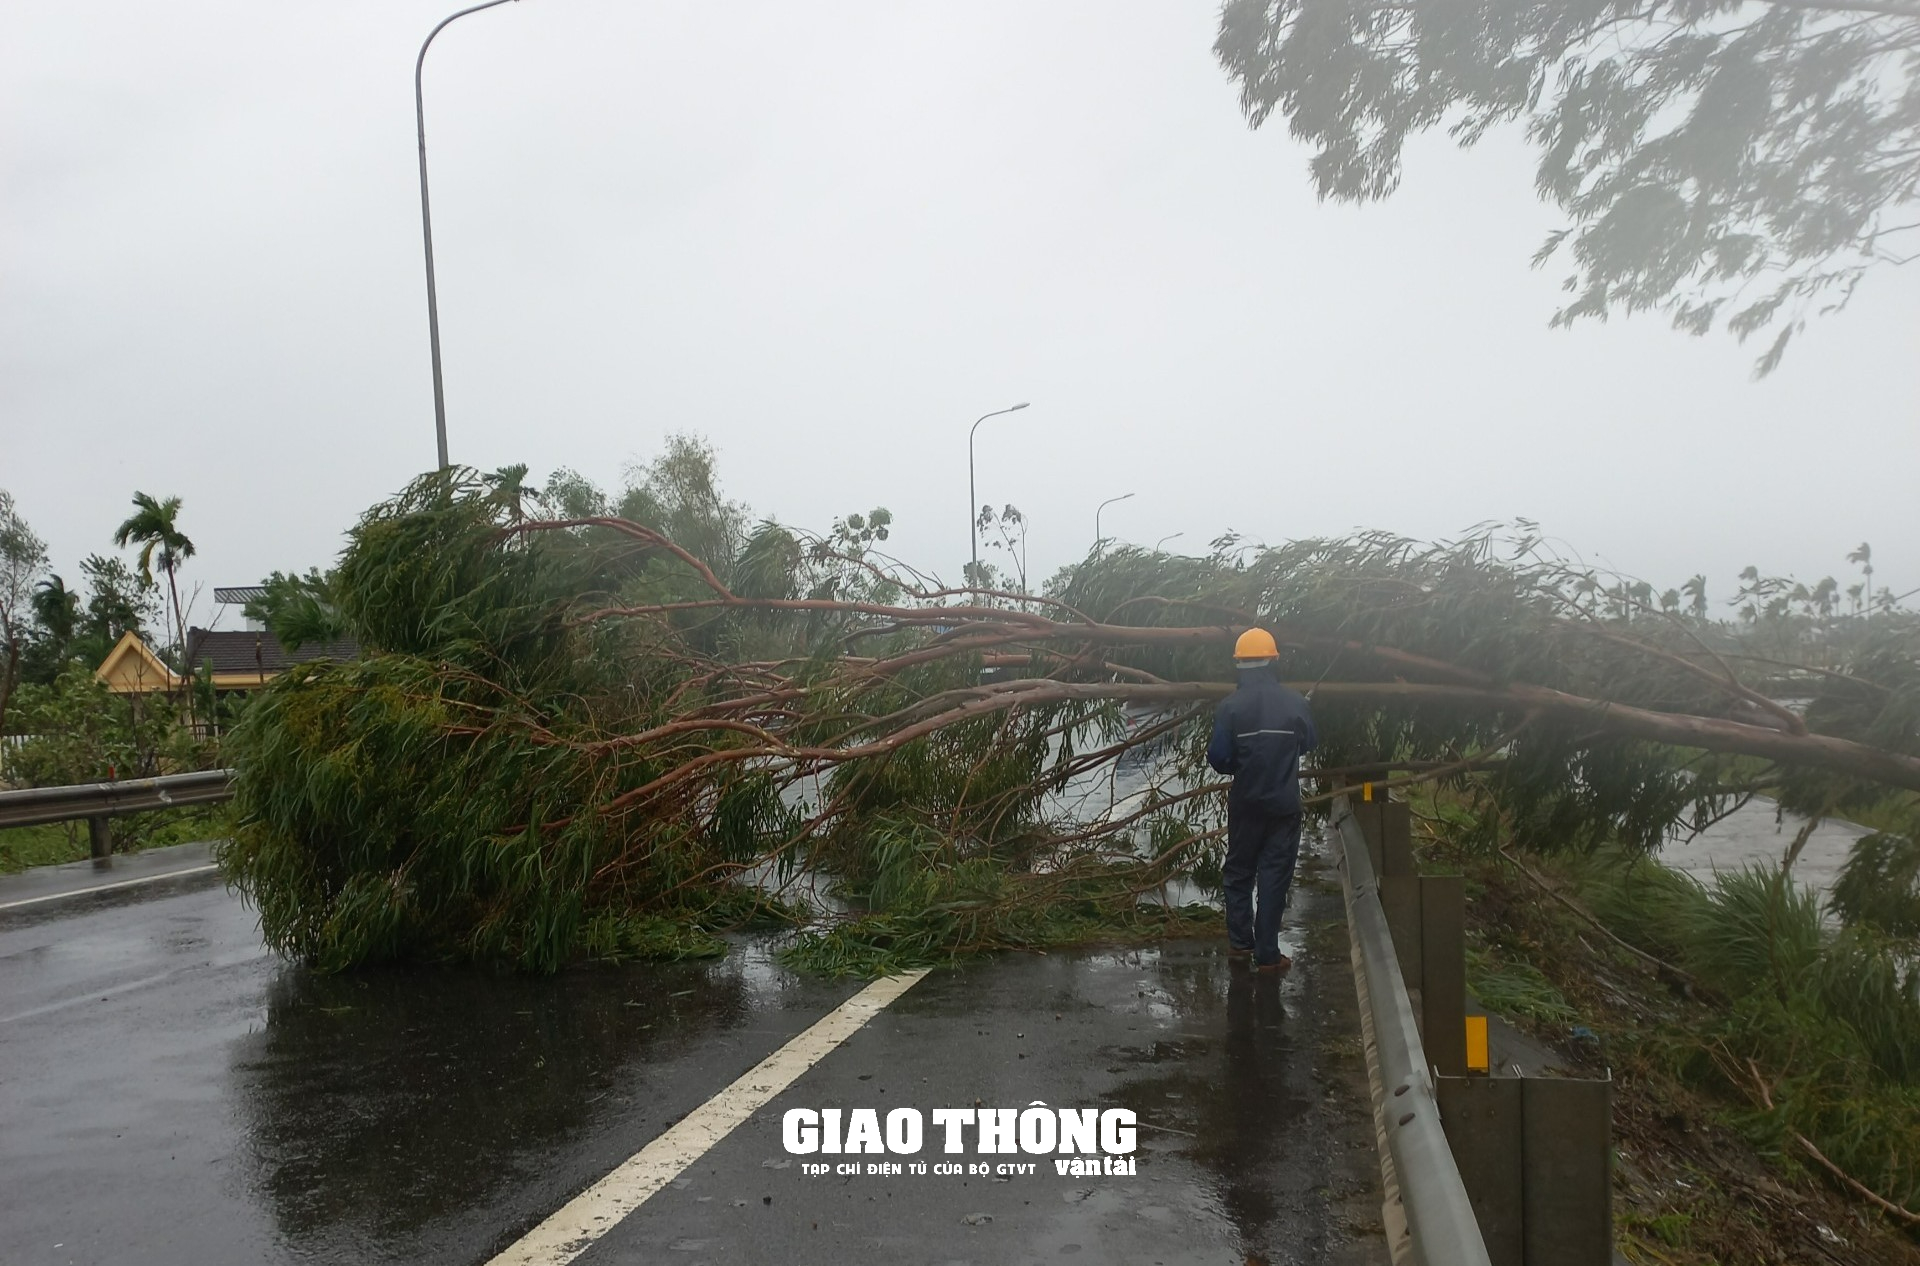 Ghi ở tâm bão Đà Nẵng-Quảng Nam: Cây xanh ngã đổ la liệt, gây ách tắc giao thông - Ảnh 6.